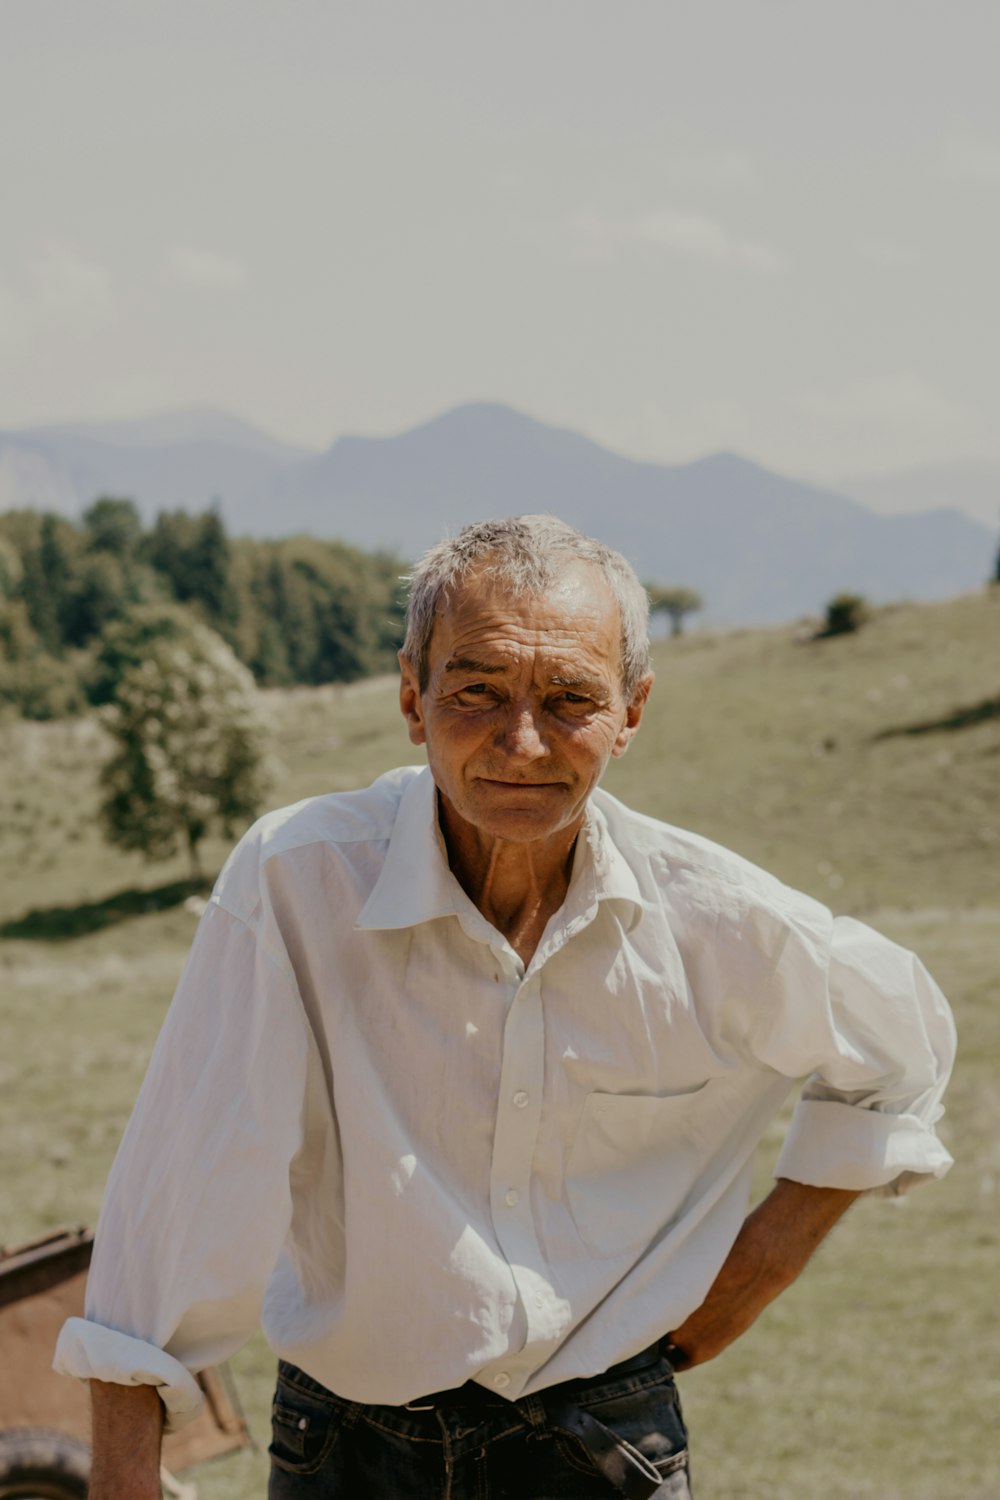 Mann in weißem Hemd steht tagsüber auf braunem Feld